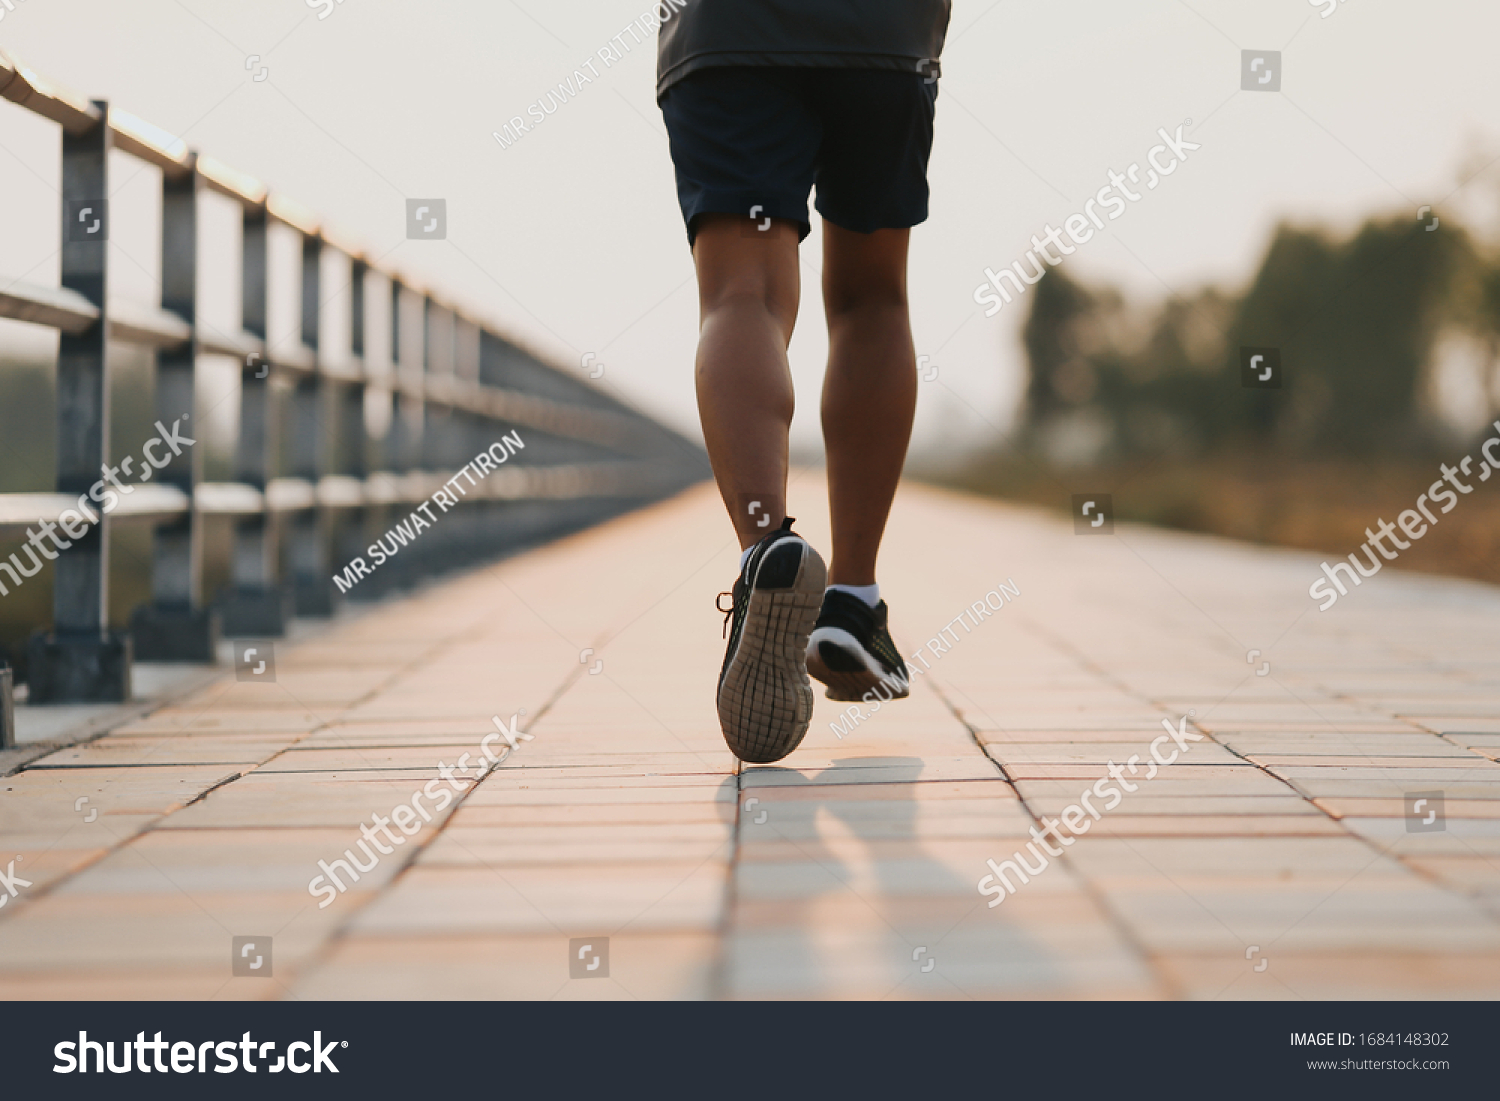 Runner feet running on road closeup on shoe. MAN fitness sunrise jog workout welness concept. #1684148302